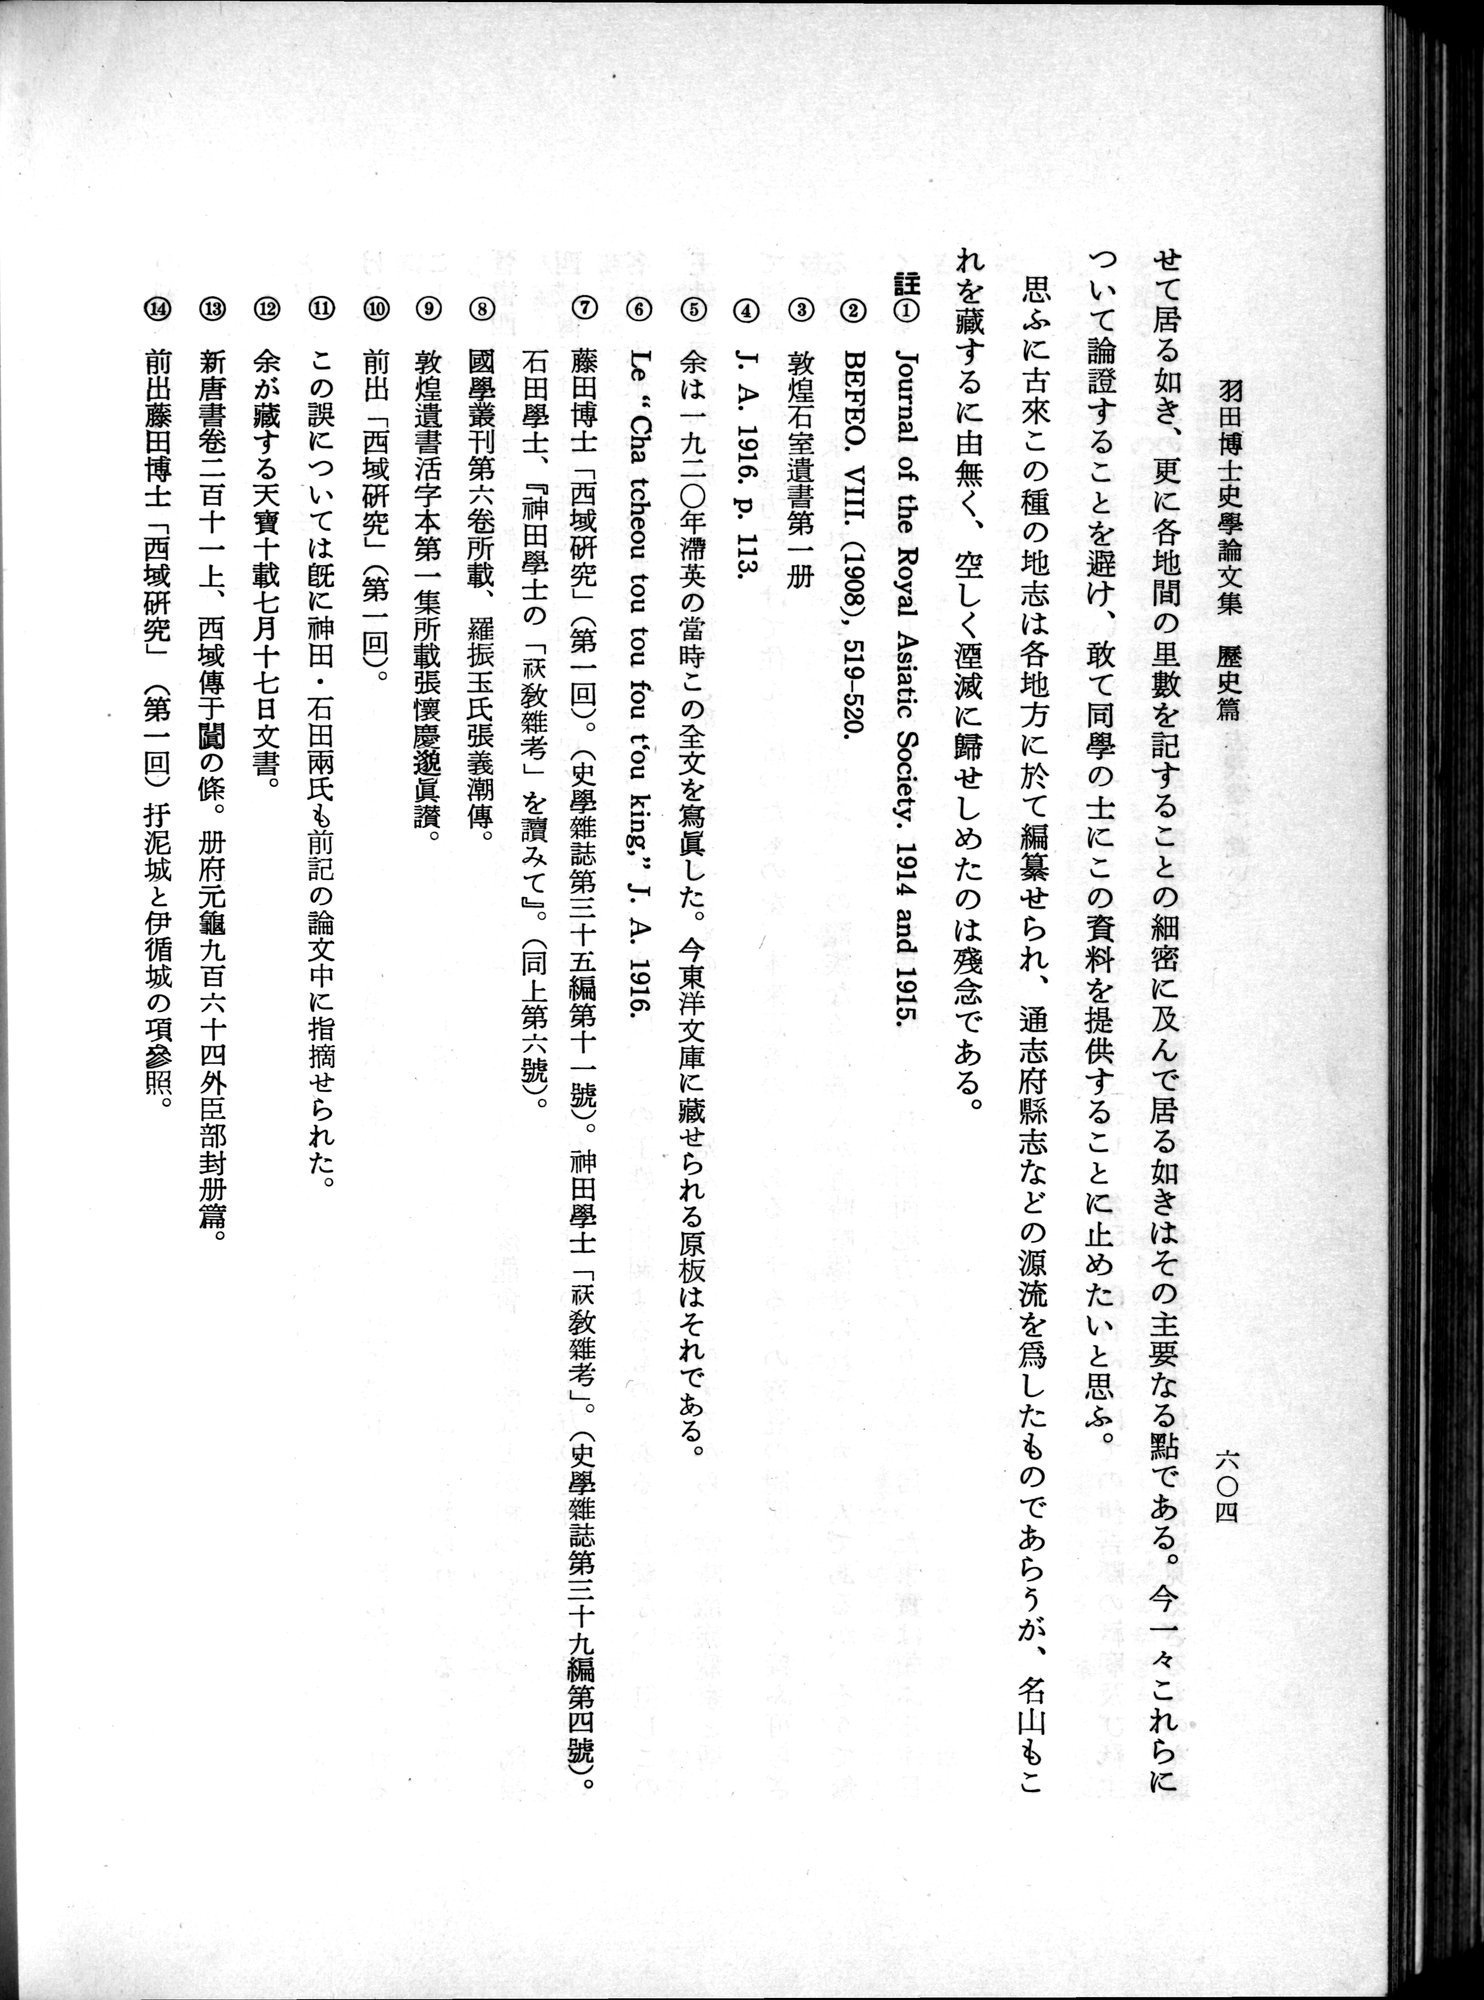 羽田博士史学論文集 : vol.1 / Page 642 (Grayscale High Resolution Image)